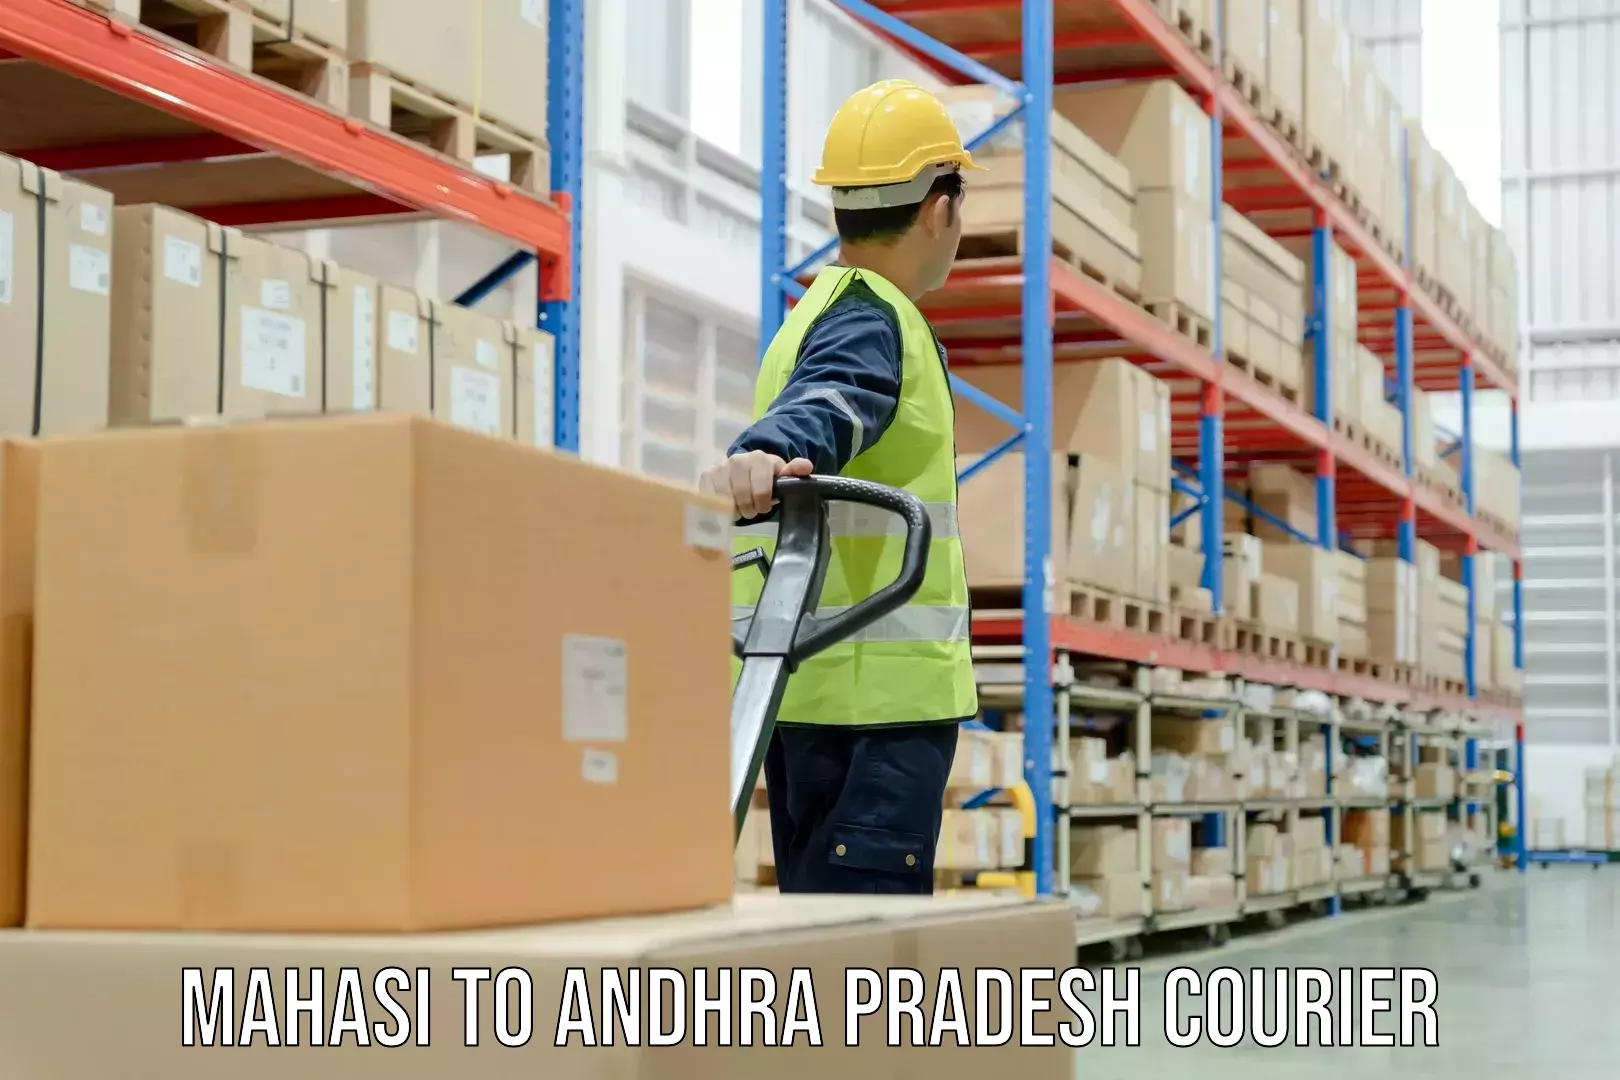 24/7 shipping services Mahasi to Andhra Pradesh